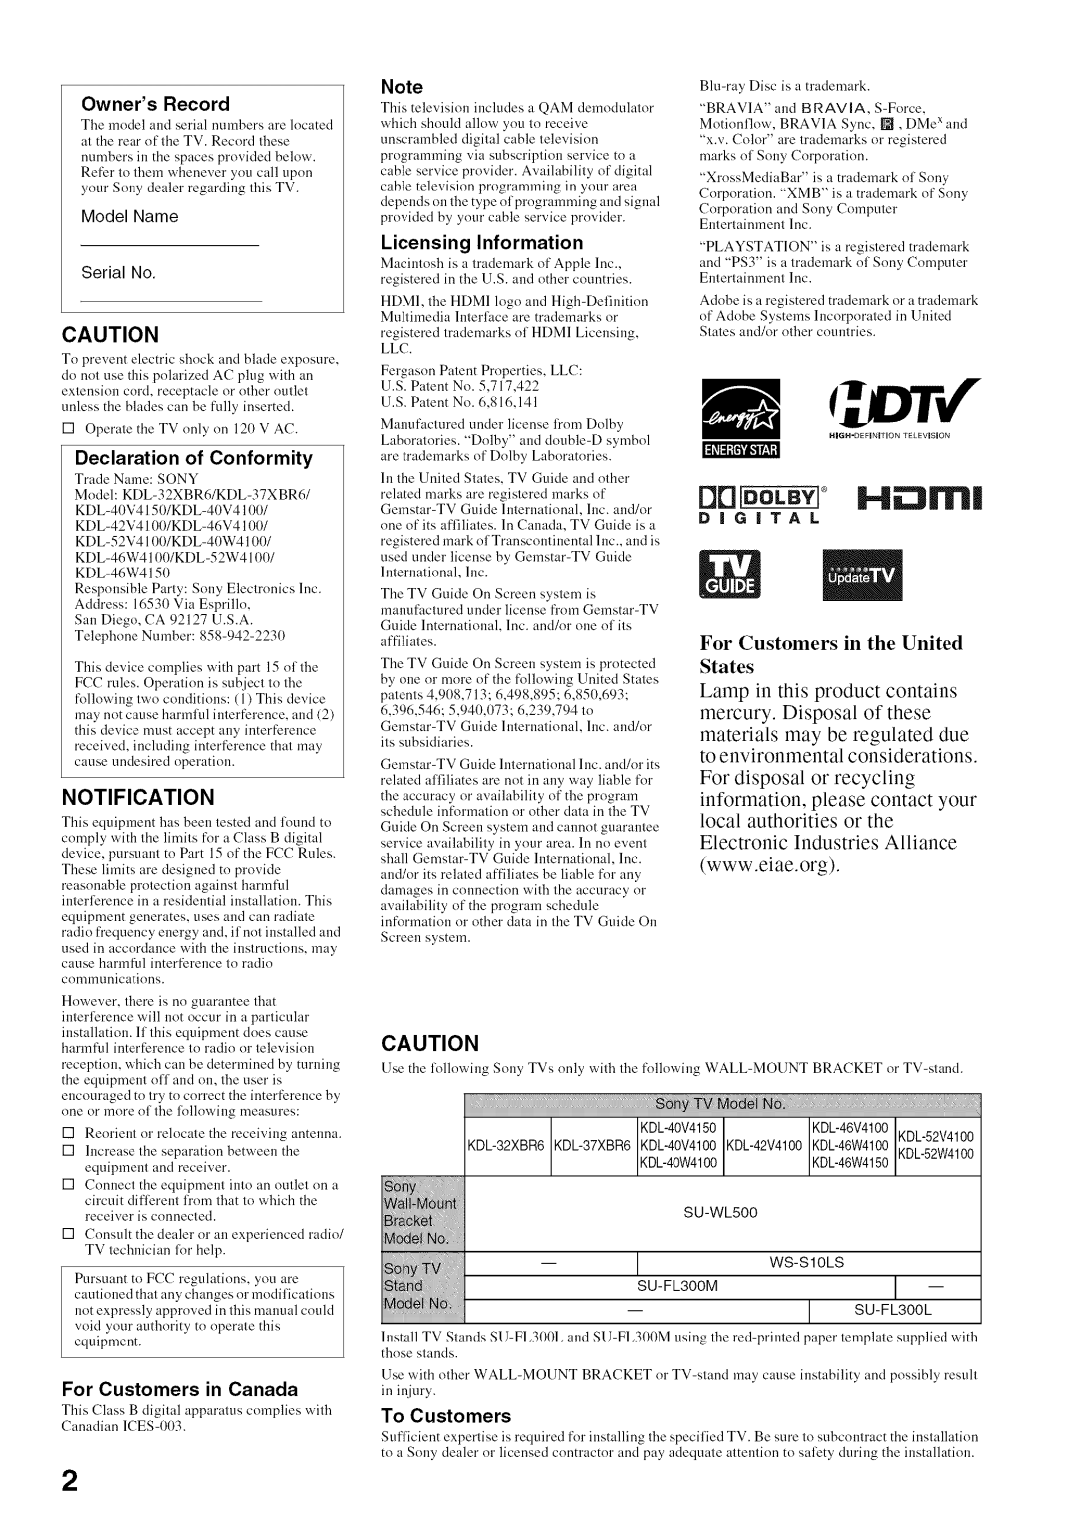 Sony KDL52V4100 operating instructions IHli 31 rllll, Notification, qlx€, Digital 